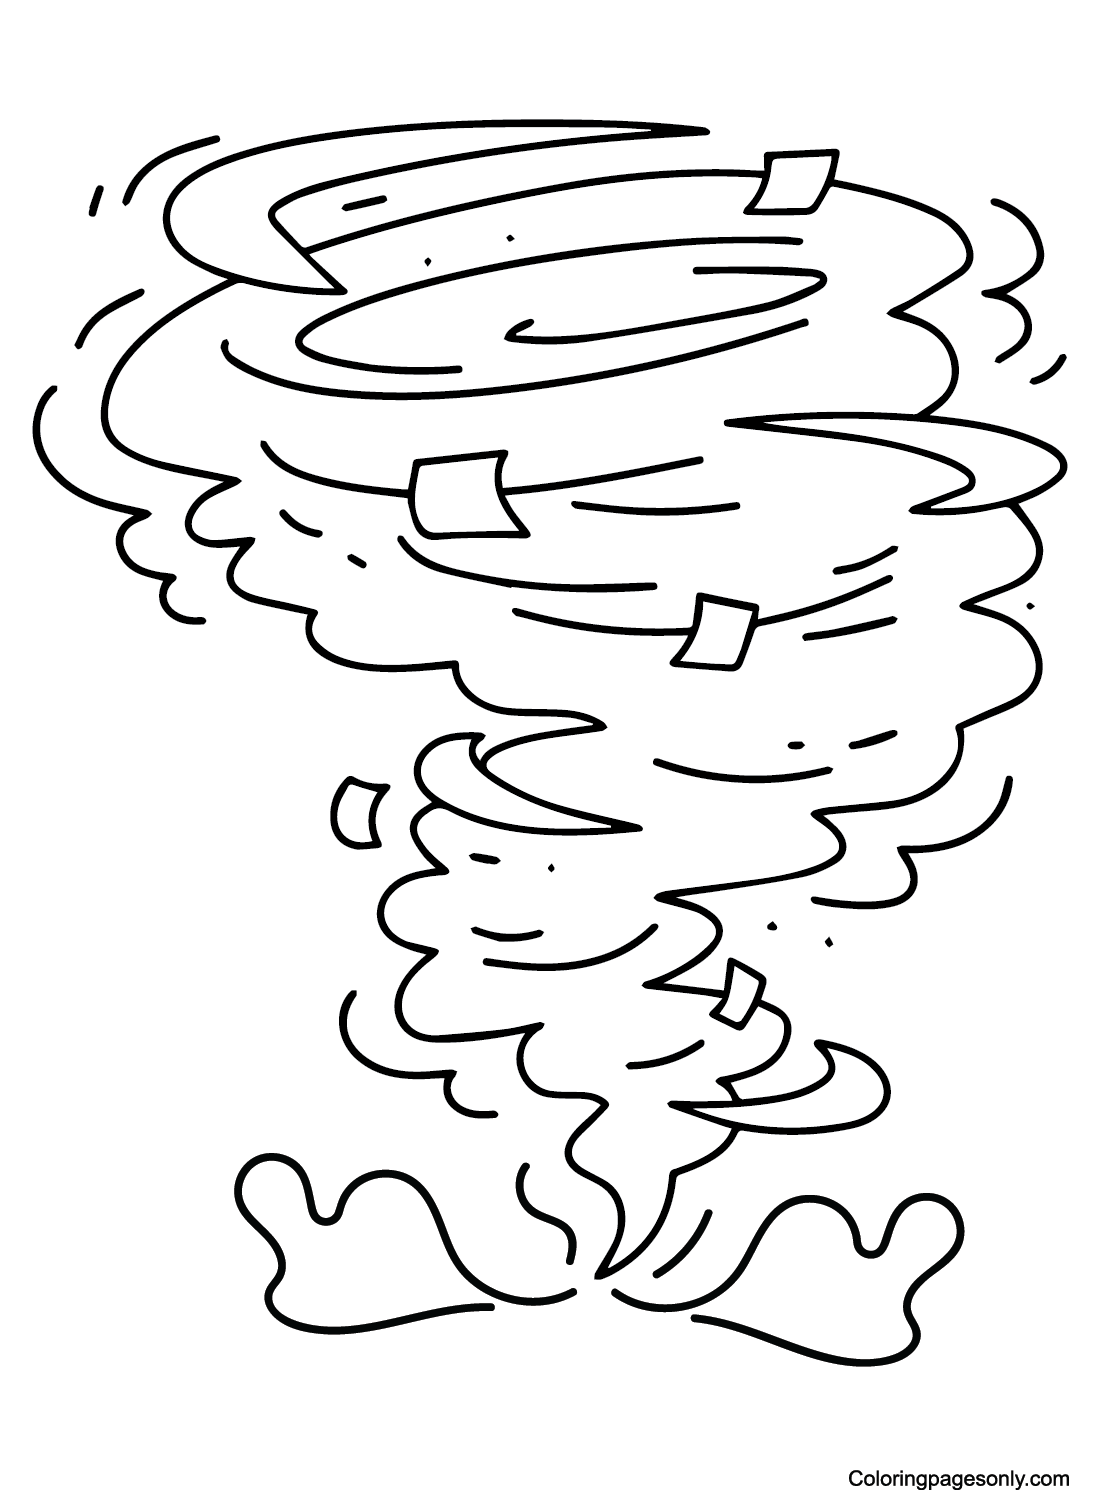 Tornado aus Tornado zeichnen